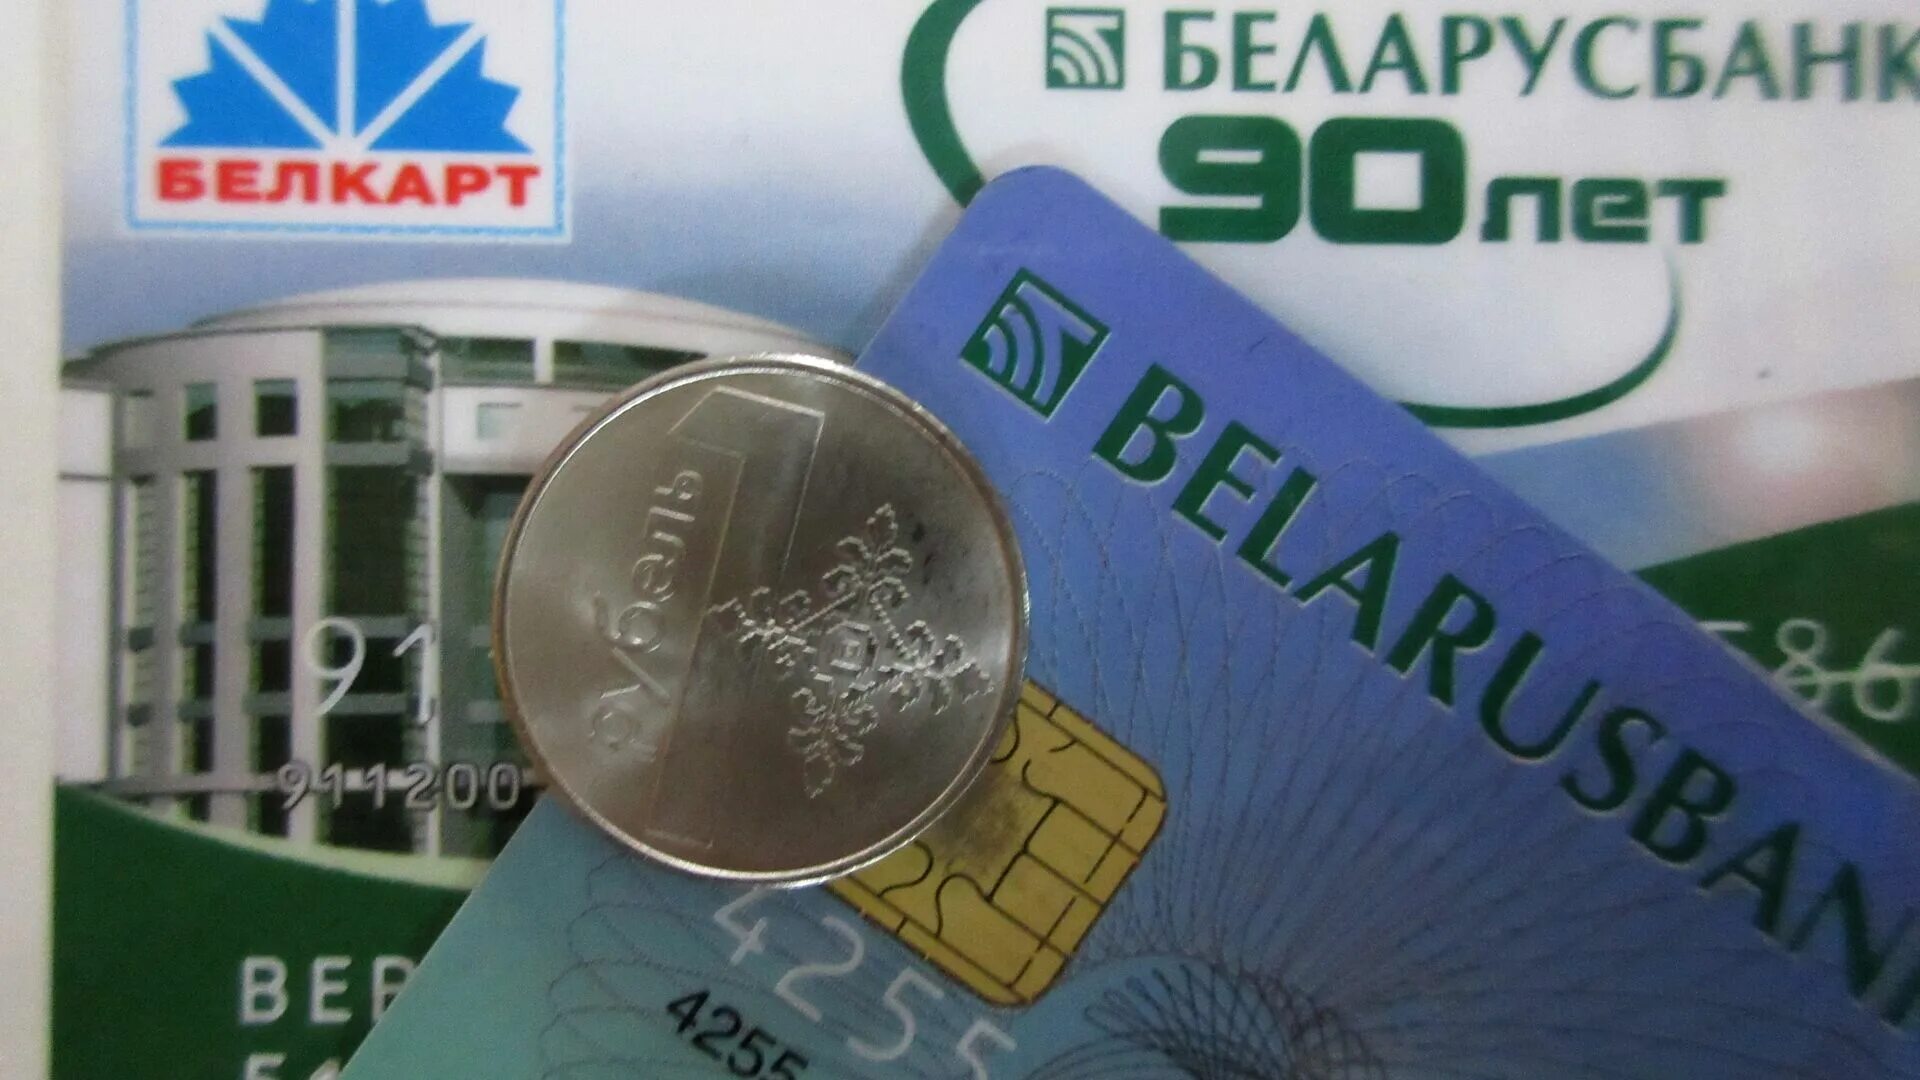 Белорусские банки валюта. Беларусбанк. Карточки Беларусбанка. Беларусбанк карта. Беларусбанк фото.